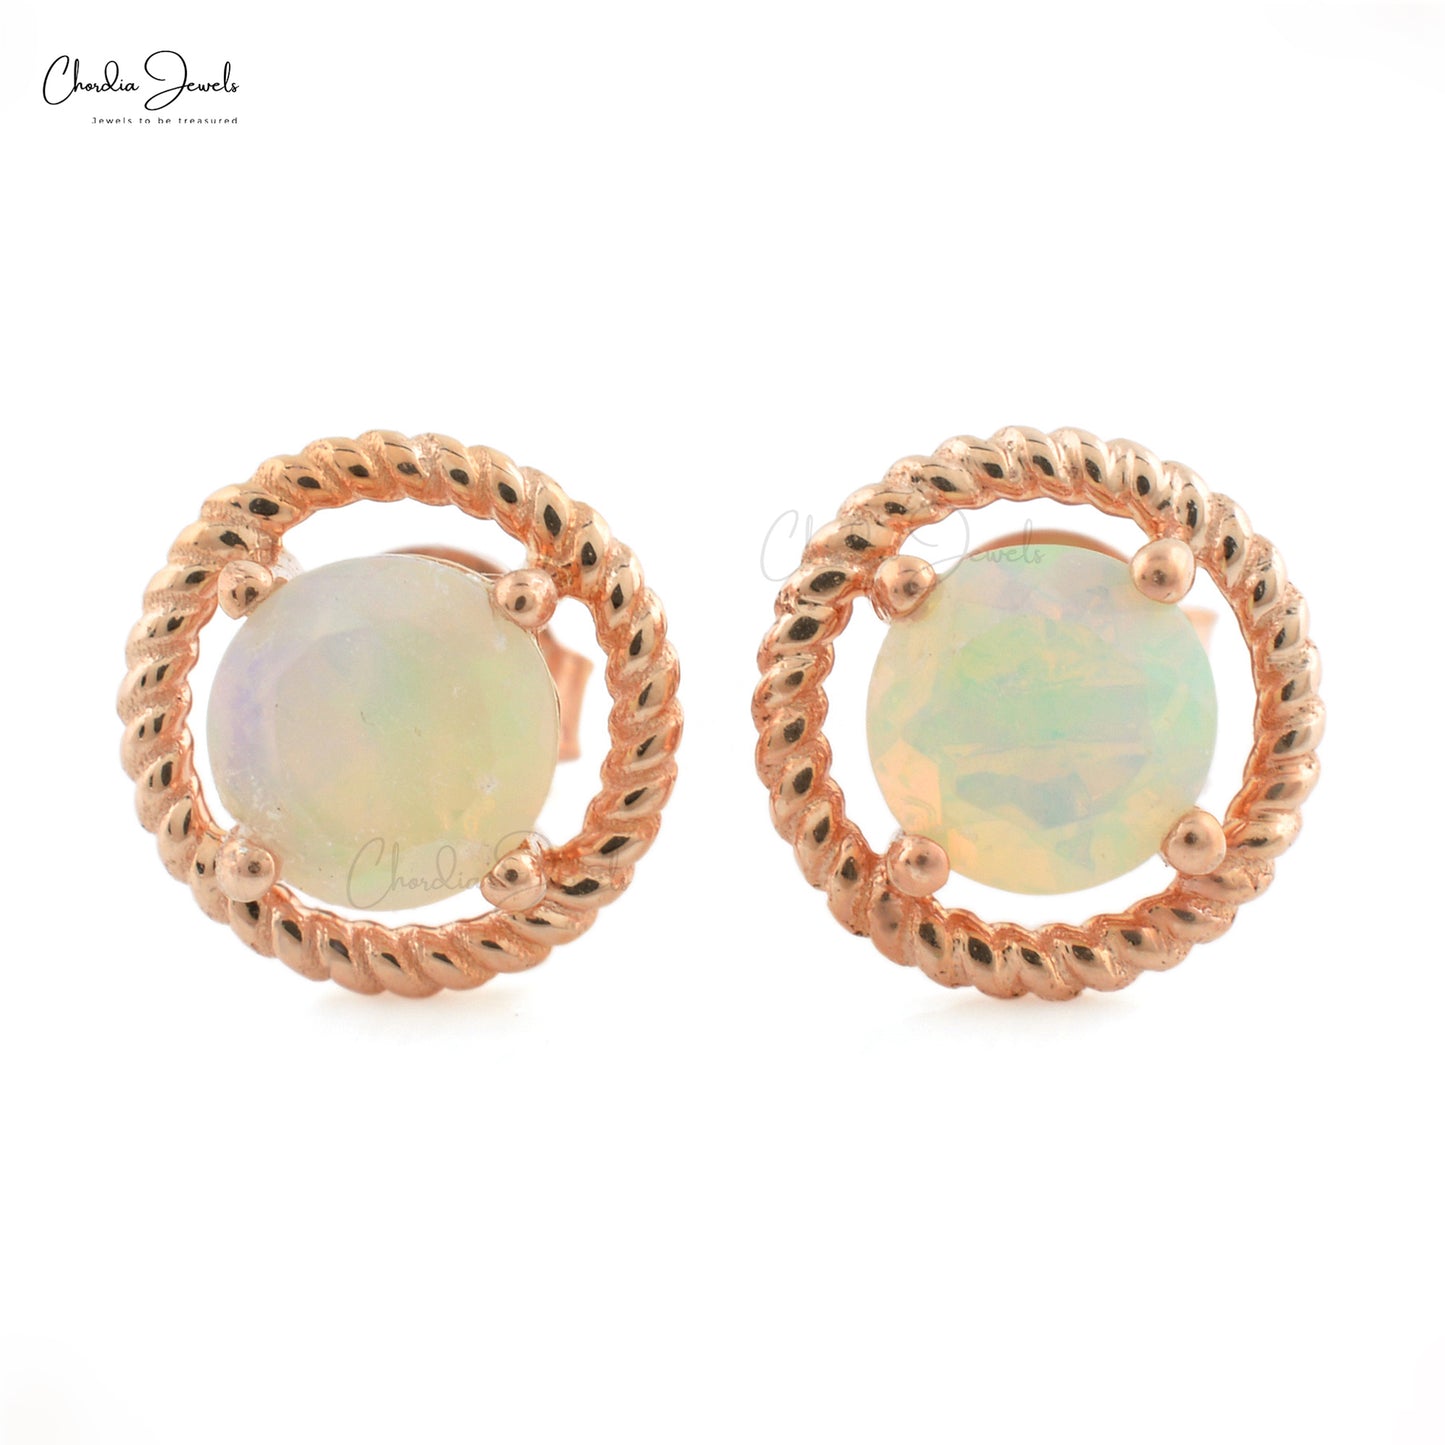 Buy Genuine Opal Earrings